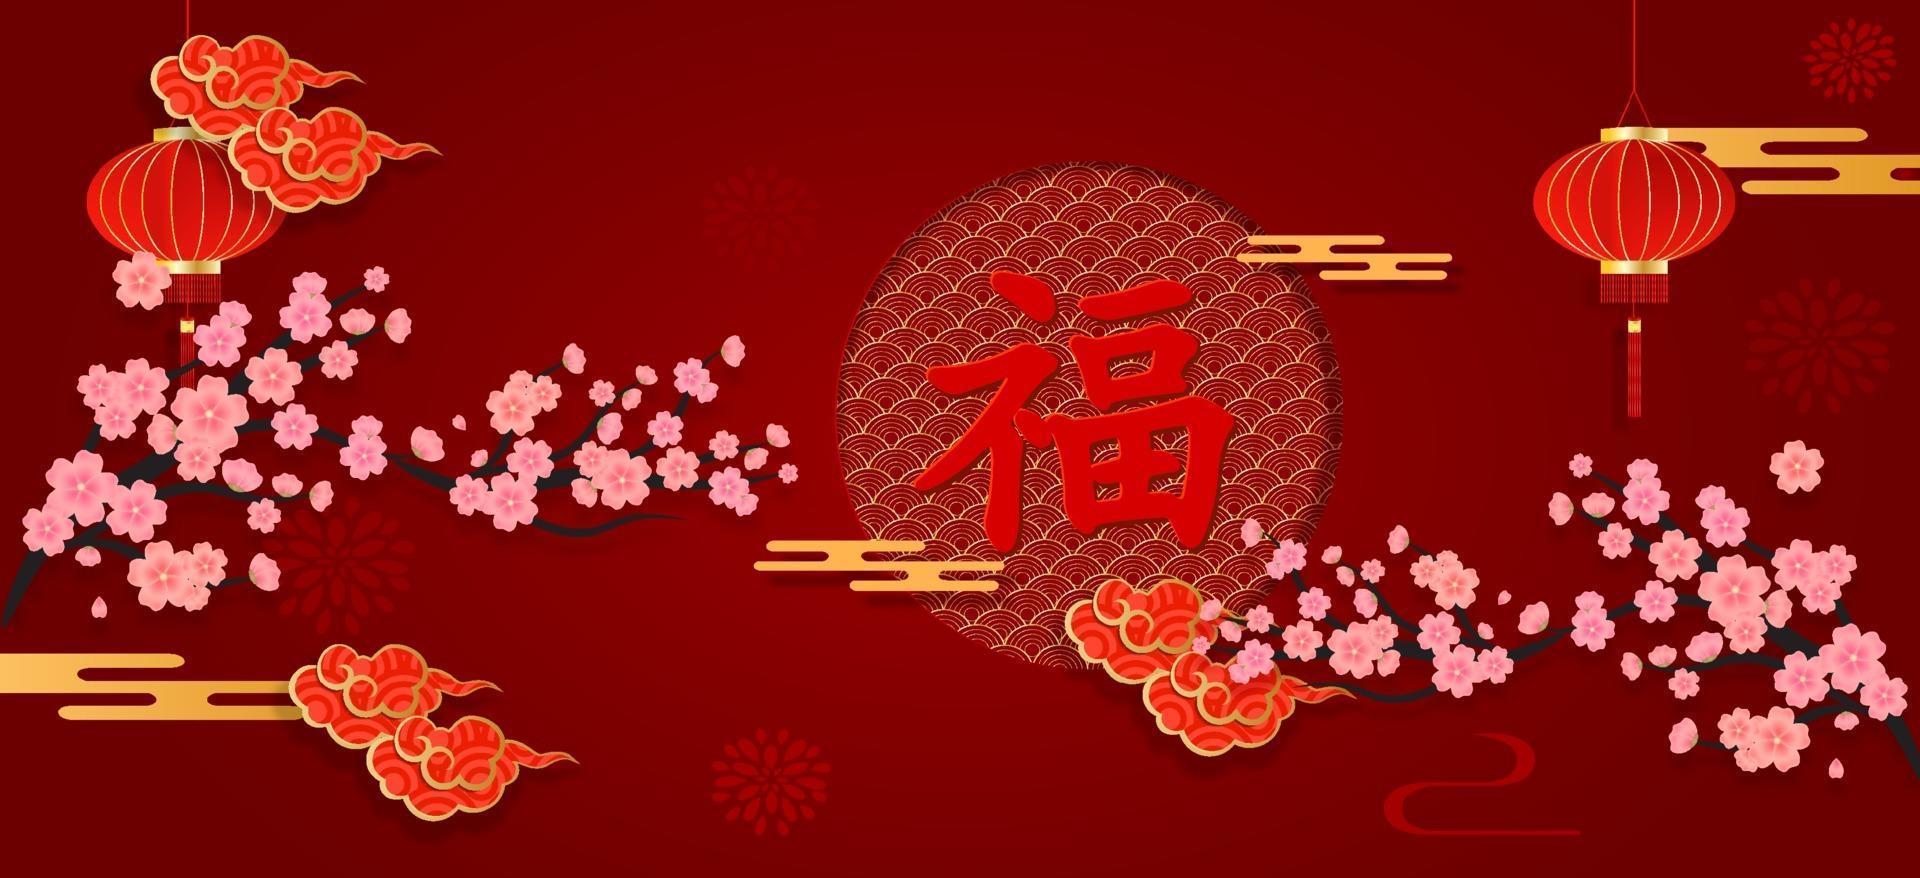 banner do ano novo chinês em papel vermelho cortado com estilo de artesanato de elementos asiáticos. bênçãos do caráter chinês escritas nele, para comemorar o ano novo chinês. vetor